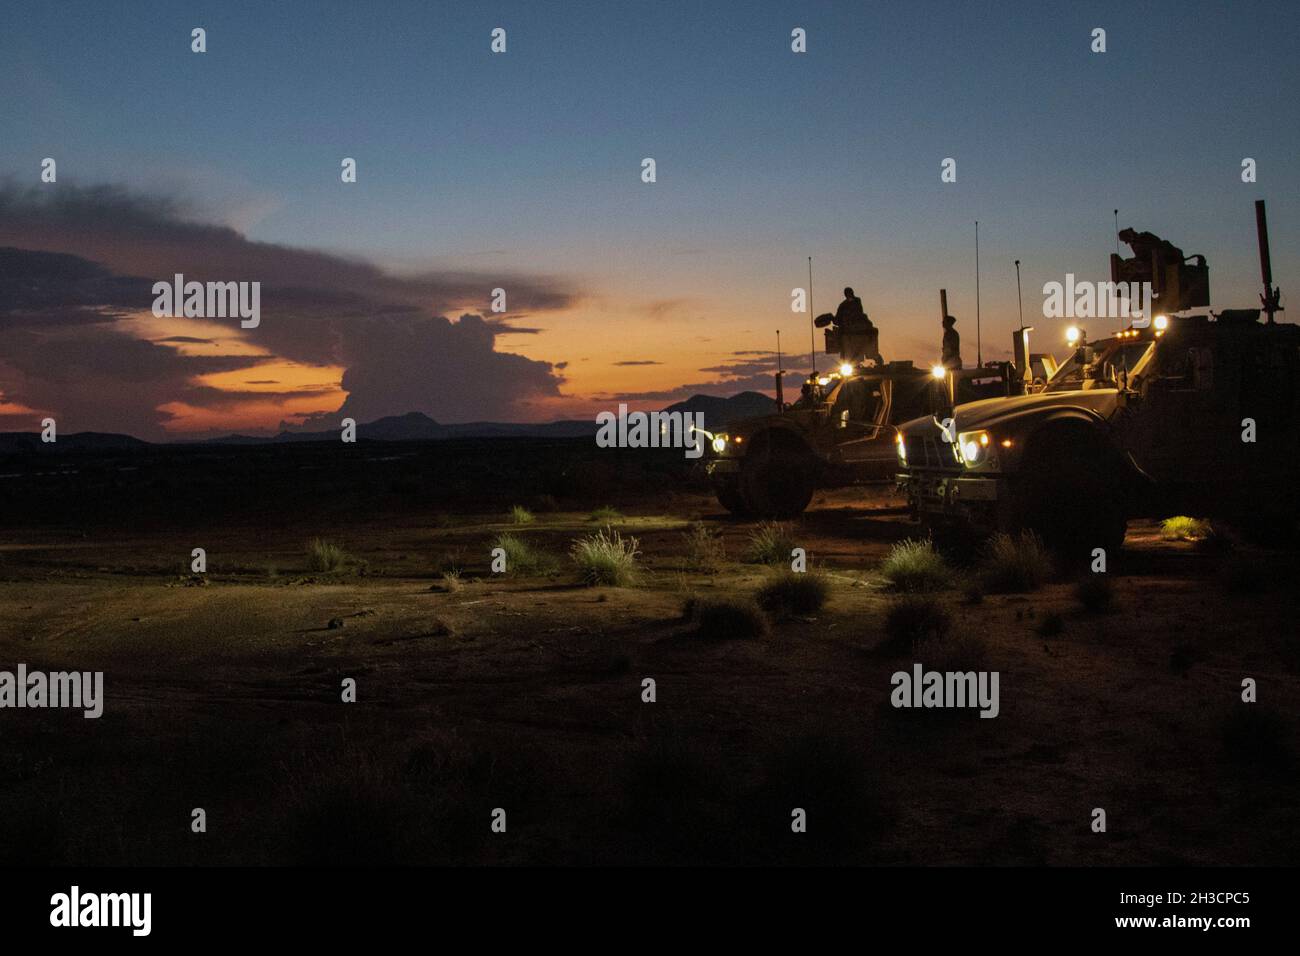 Les soldats américains affectés à la Dagger Company, 1-102e Régiment d'infanterie (Mountain), Force opérationnelle Iron Gray, Force opérationnelle interarmées combinée – Corne de l'Afrique (CJTF-HOA), conduisent un entraînement de tir à distance au complexe de la chaîne djiboutienne, à Djibouti, le 10 octobre 2021.L'entraînement consistait à exploiter la station d'armes commune à distance (CORNEILLES), montée sur un véhicule tout-terrain (M-ATV) résistant aux mines, tout en engageant des cibles à partir d'une boîte de manœuvre.(É.-U.Photo de l'armée par le sergent d'état-major.Amanda) Banque D'Images